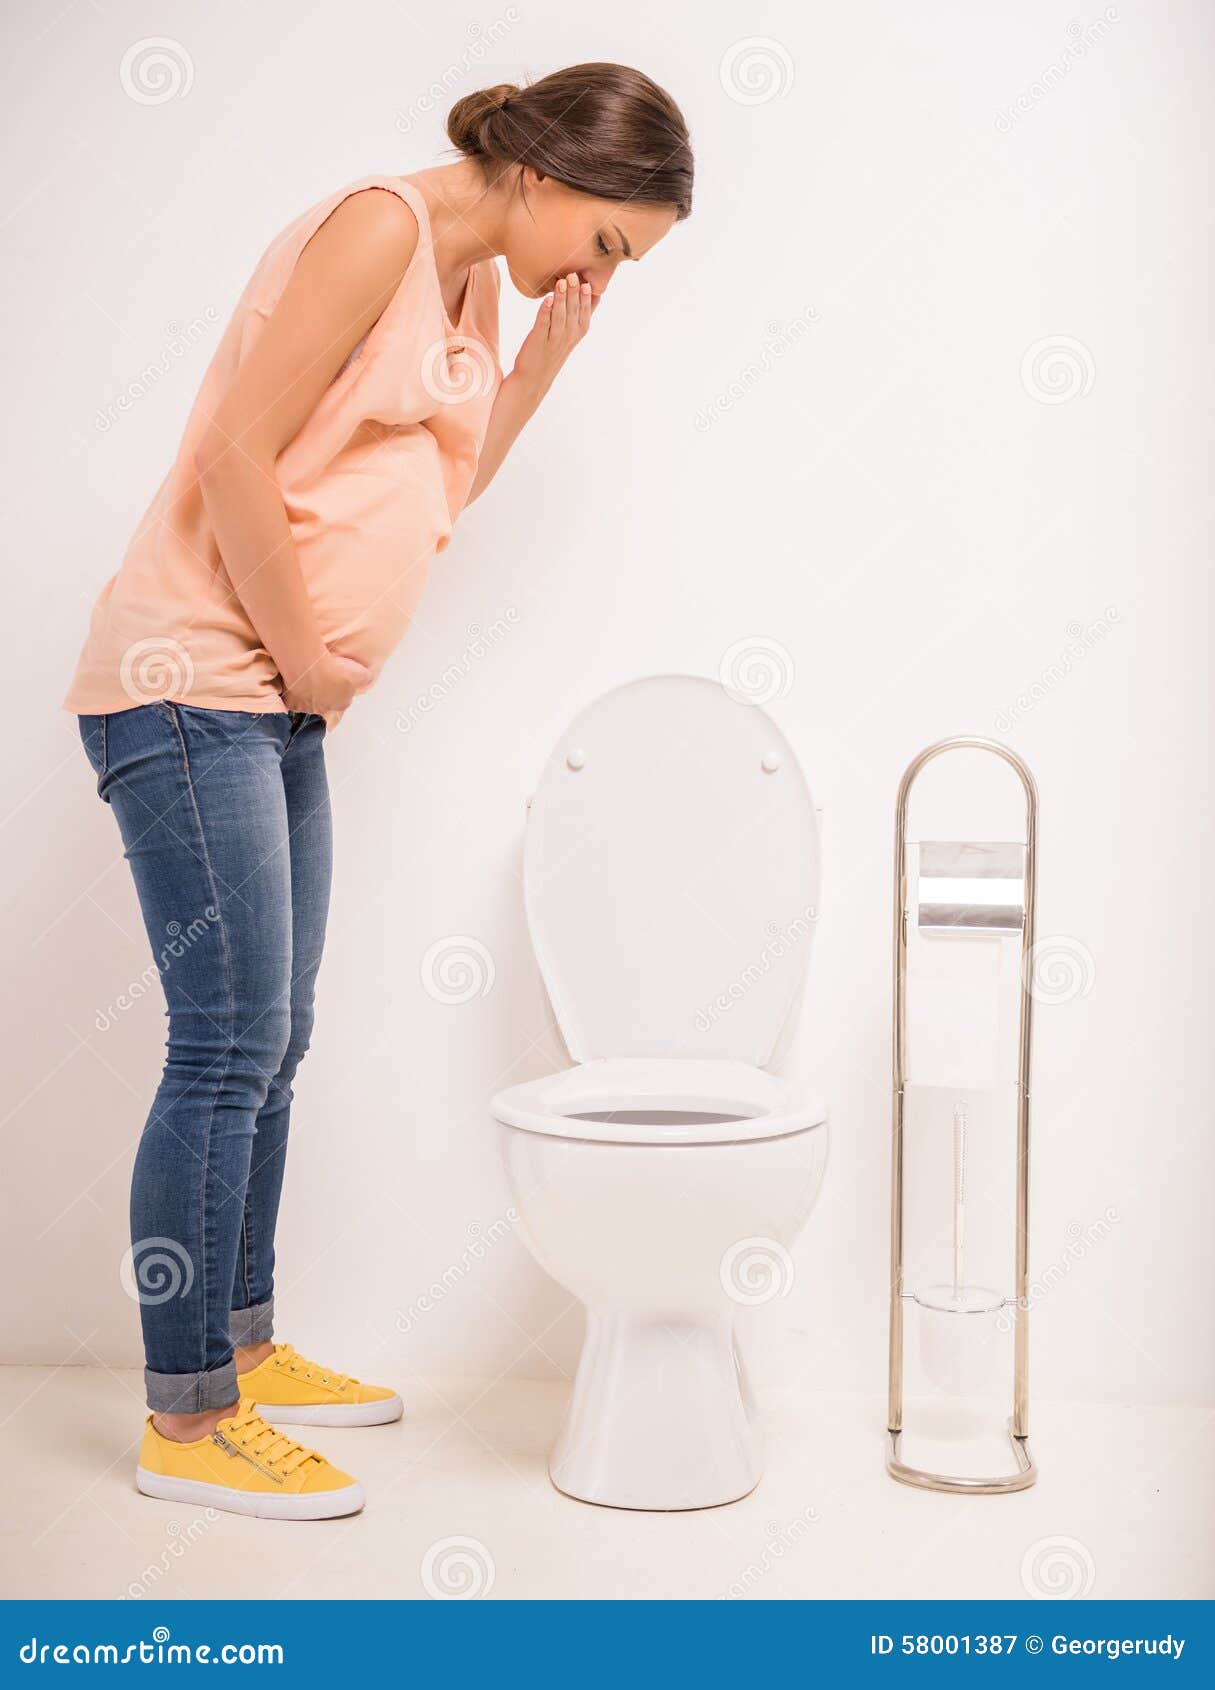 Девушки, селфи и туалет: 20 смешных фото о загадочной силе притяжения